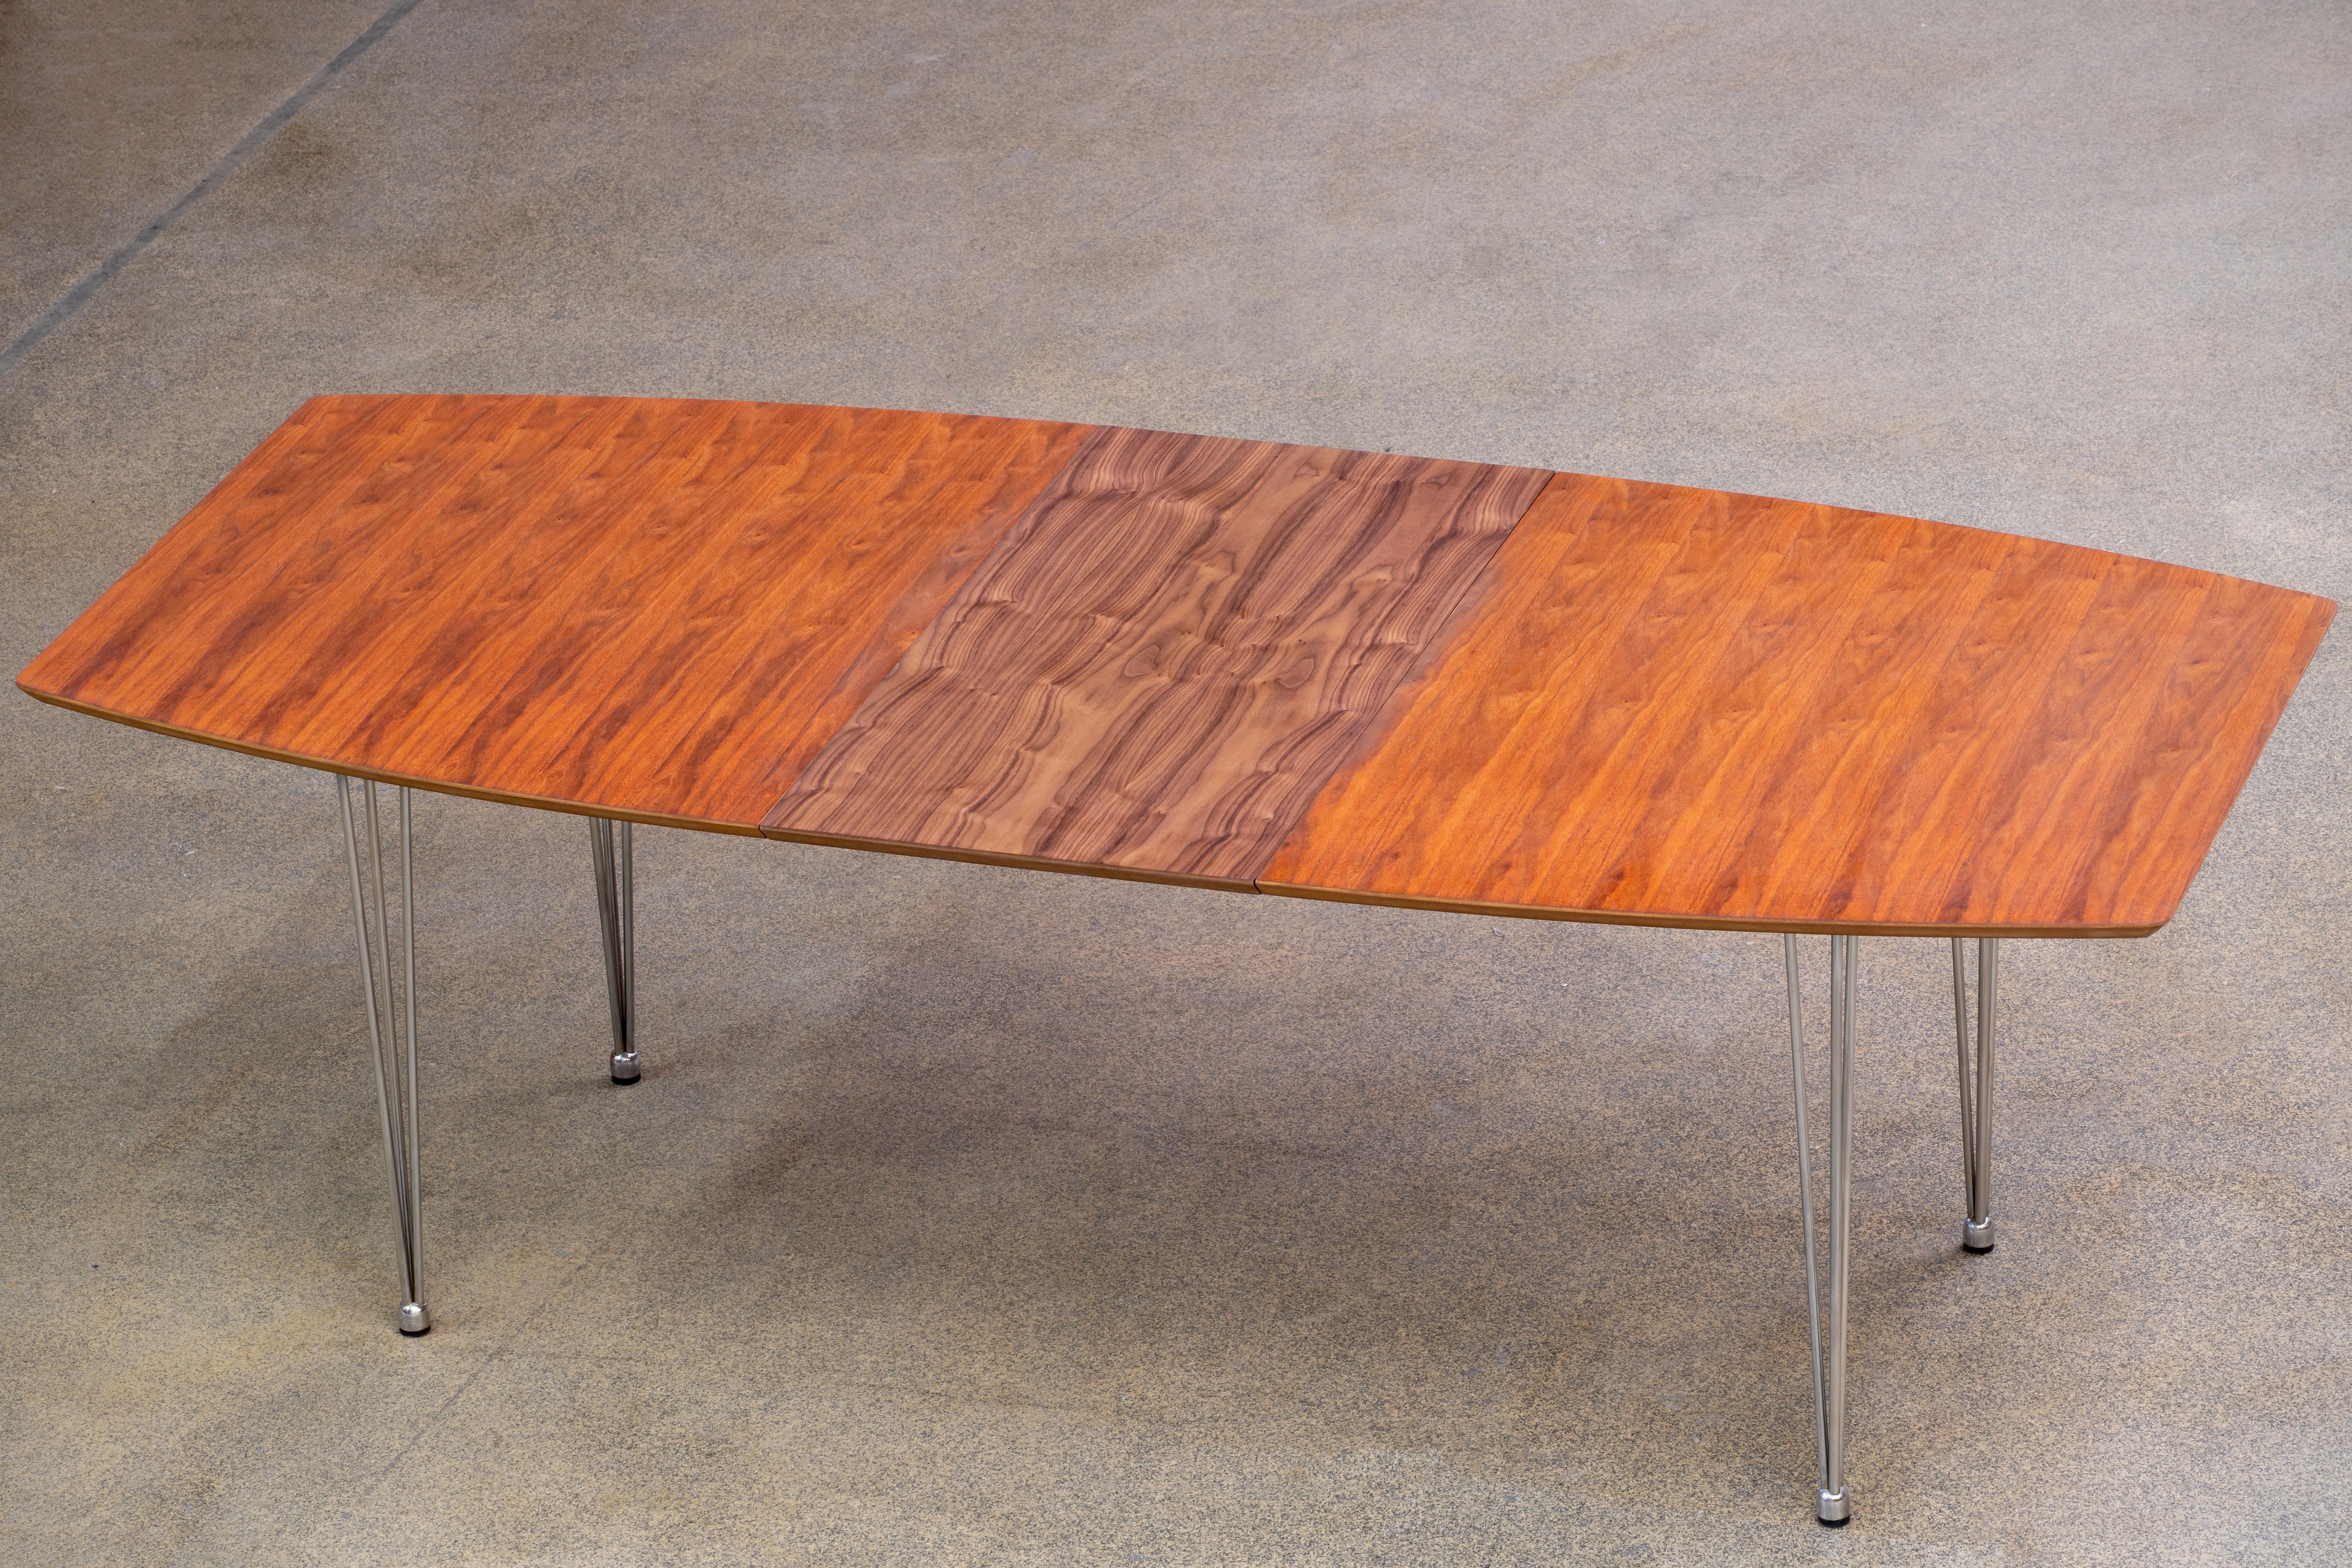 Der Super-Ellipse-Tisch mit Platte aus Nussbaum mit verchromten Federstahlbeinen.
Doppelte 50 cm lange Verlängerungsflügel. ( 170/270 x 100 x 73 cm).